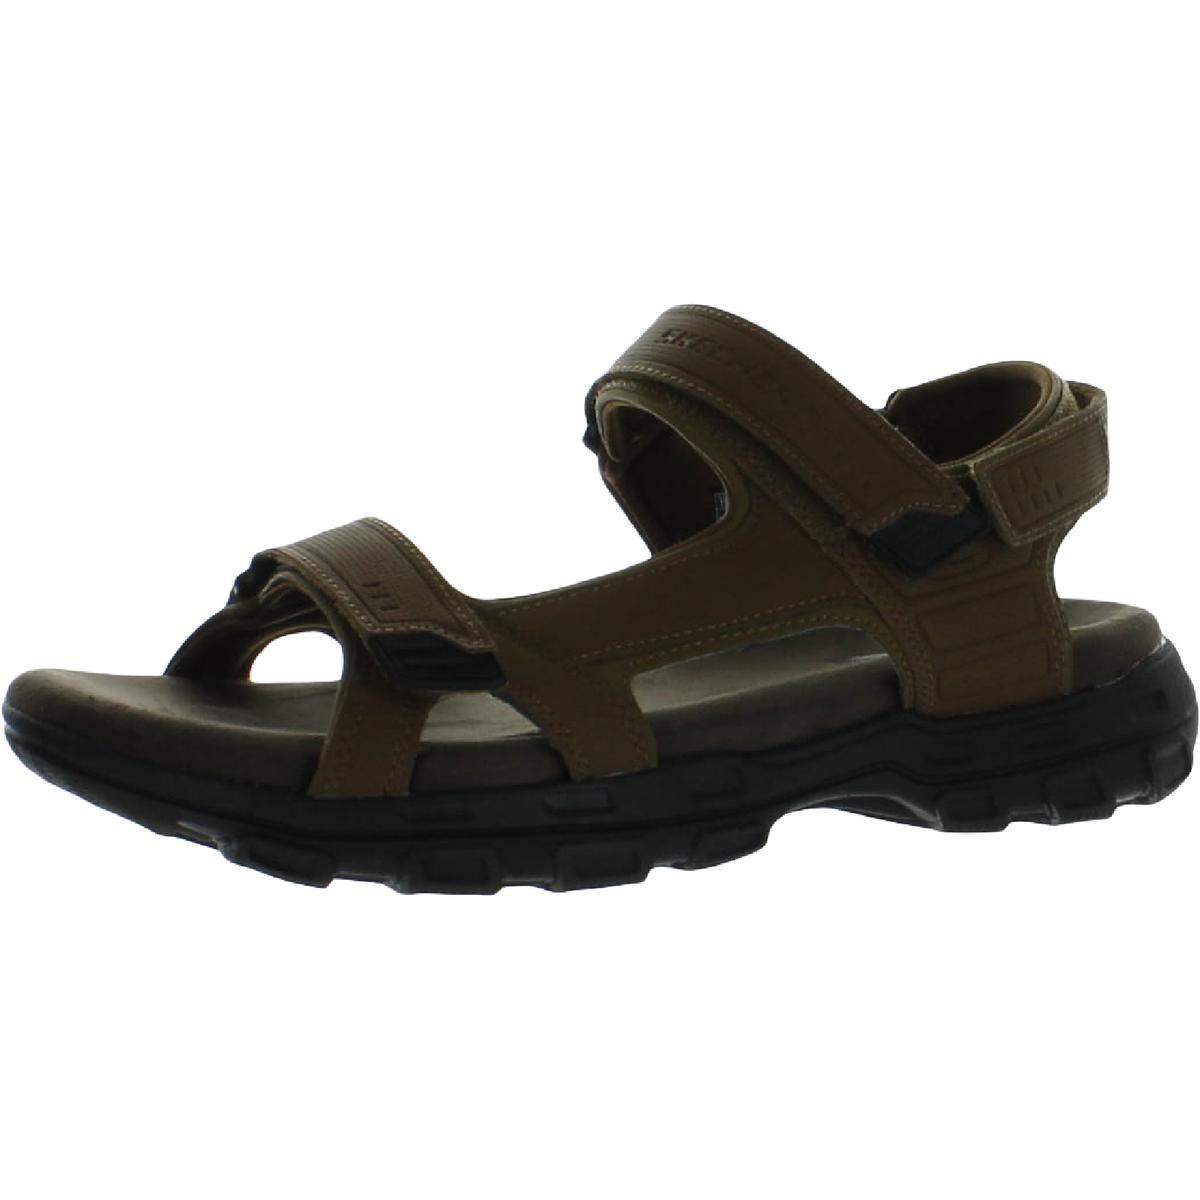 Skechers Mens Garver-louden Sport Slip On Slide Sandals Shoes Bhfo 6606 Brown